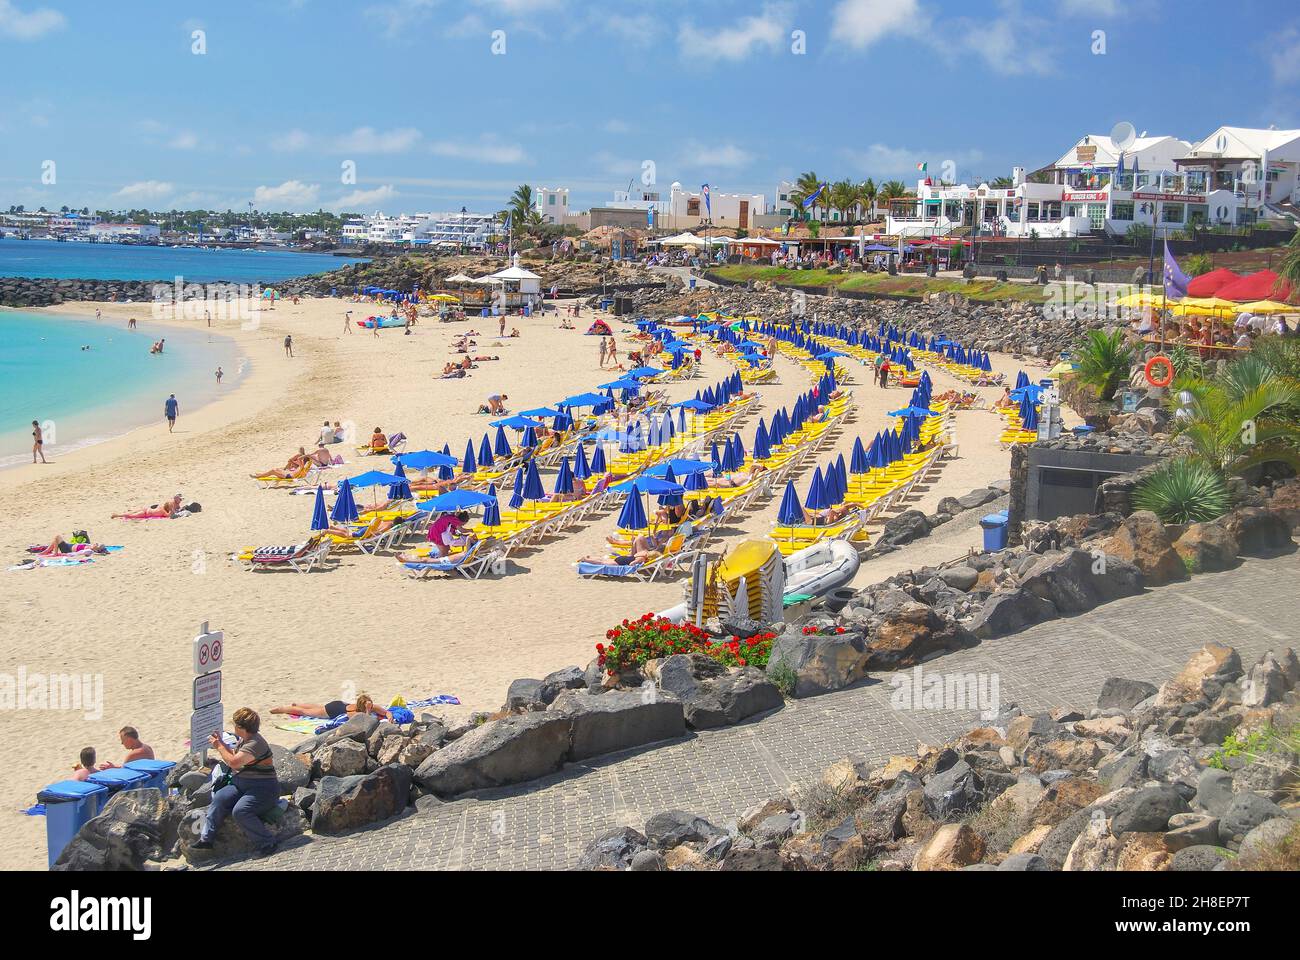 Promenade de la plage, Playa Grande, Playa Blanca, Lanzarote, îles Canaries, Espagne Banque D'Images